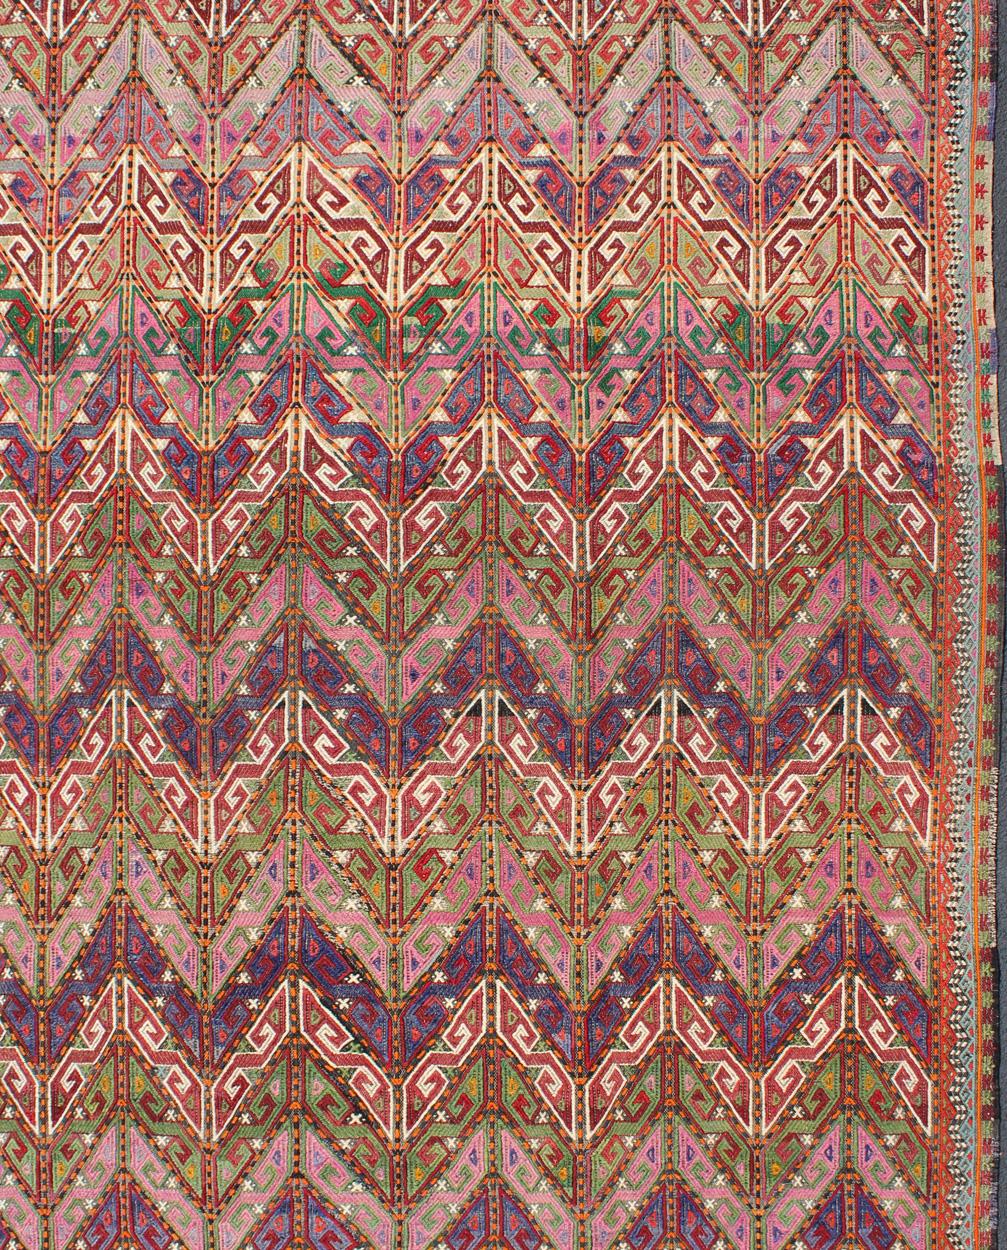 Türkischer Flachgewebe-Tribal-Kelim mit Stickereien in mehreren Farben, Teppich / TU-NED-566.

Dieser einzigartige türkische Kelim aus der Mitte des letzten Jahrhunderts ist in Stammesformen mit gefleckten und gesprenkelten geometrischen Elementen